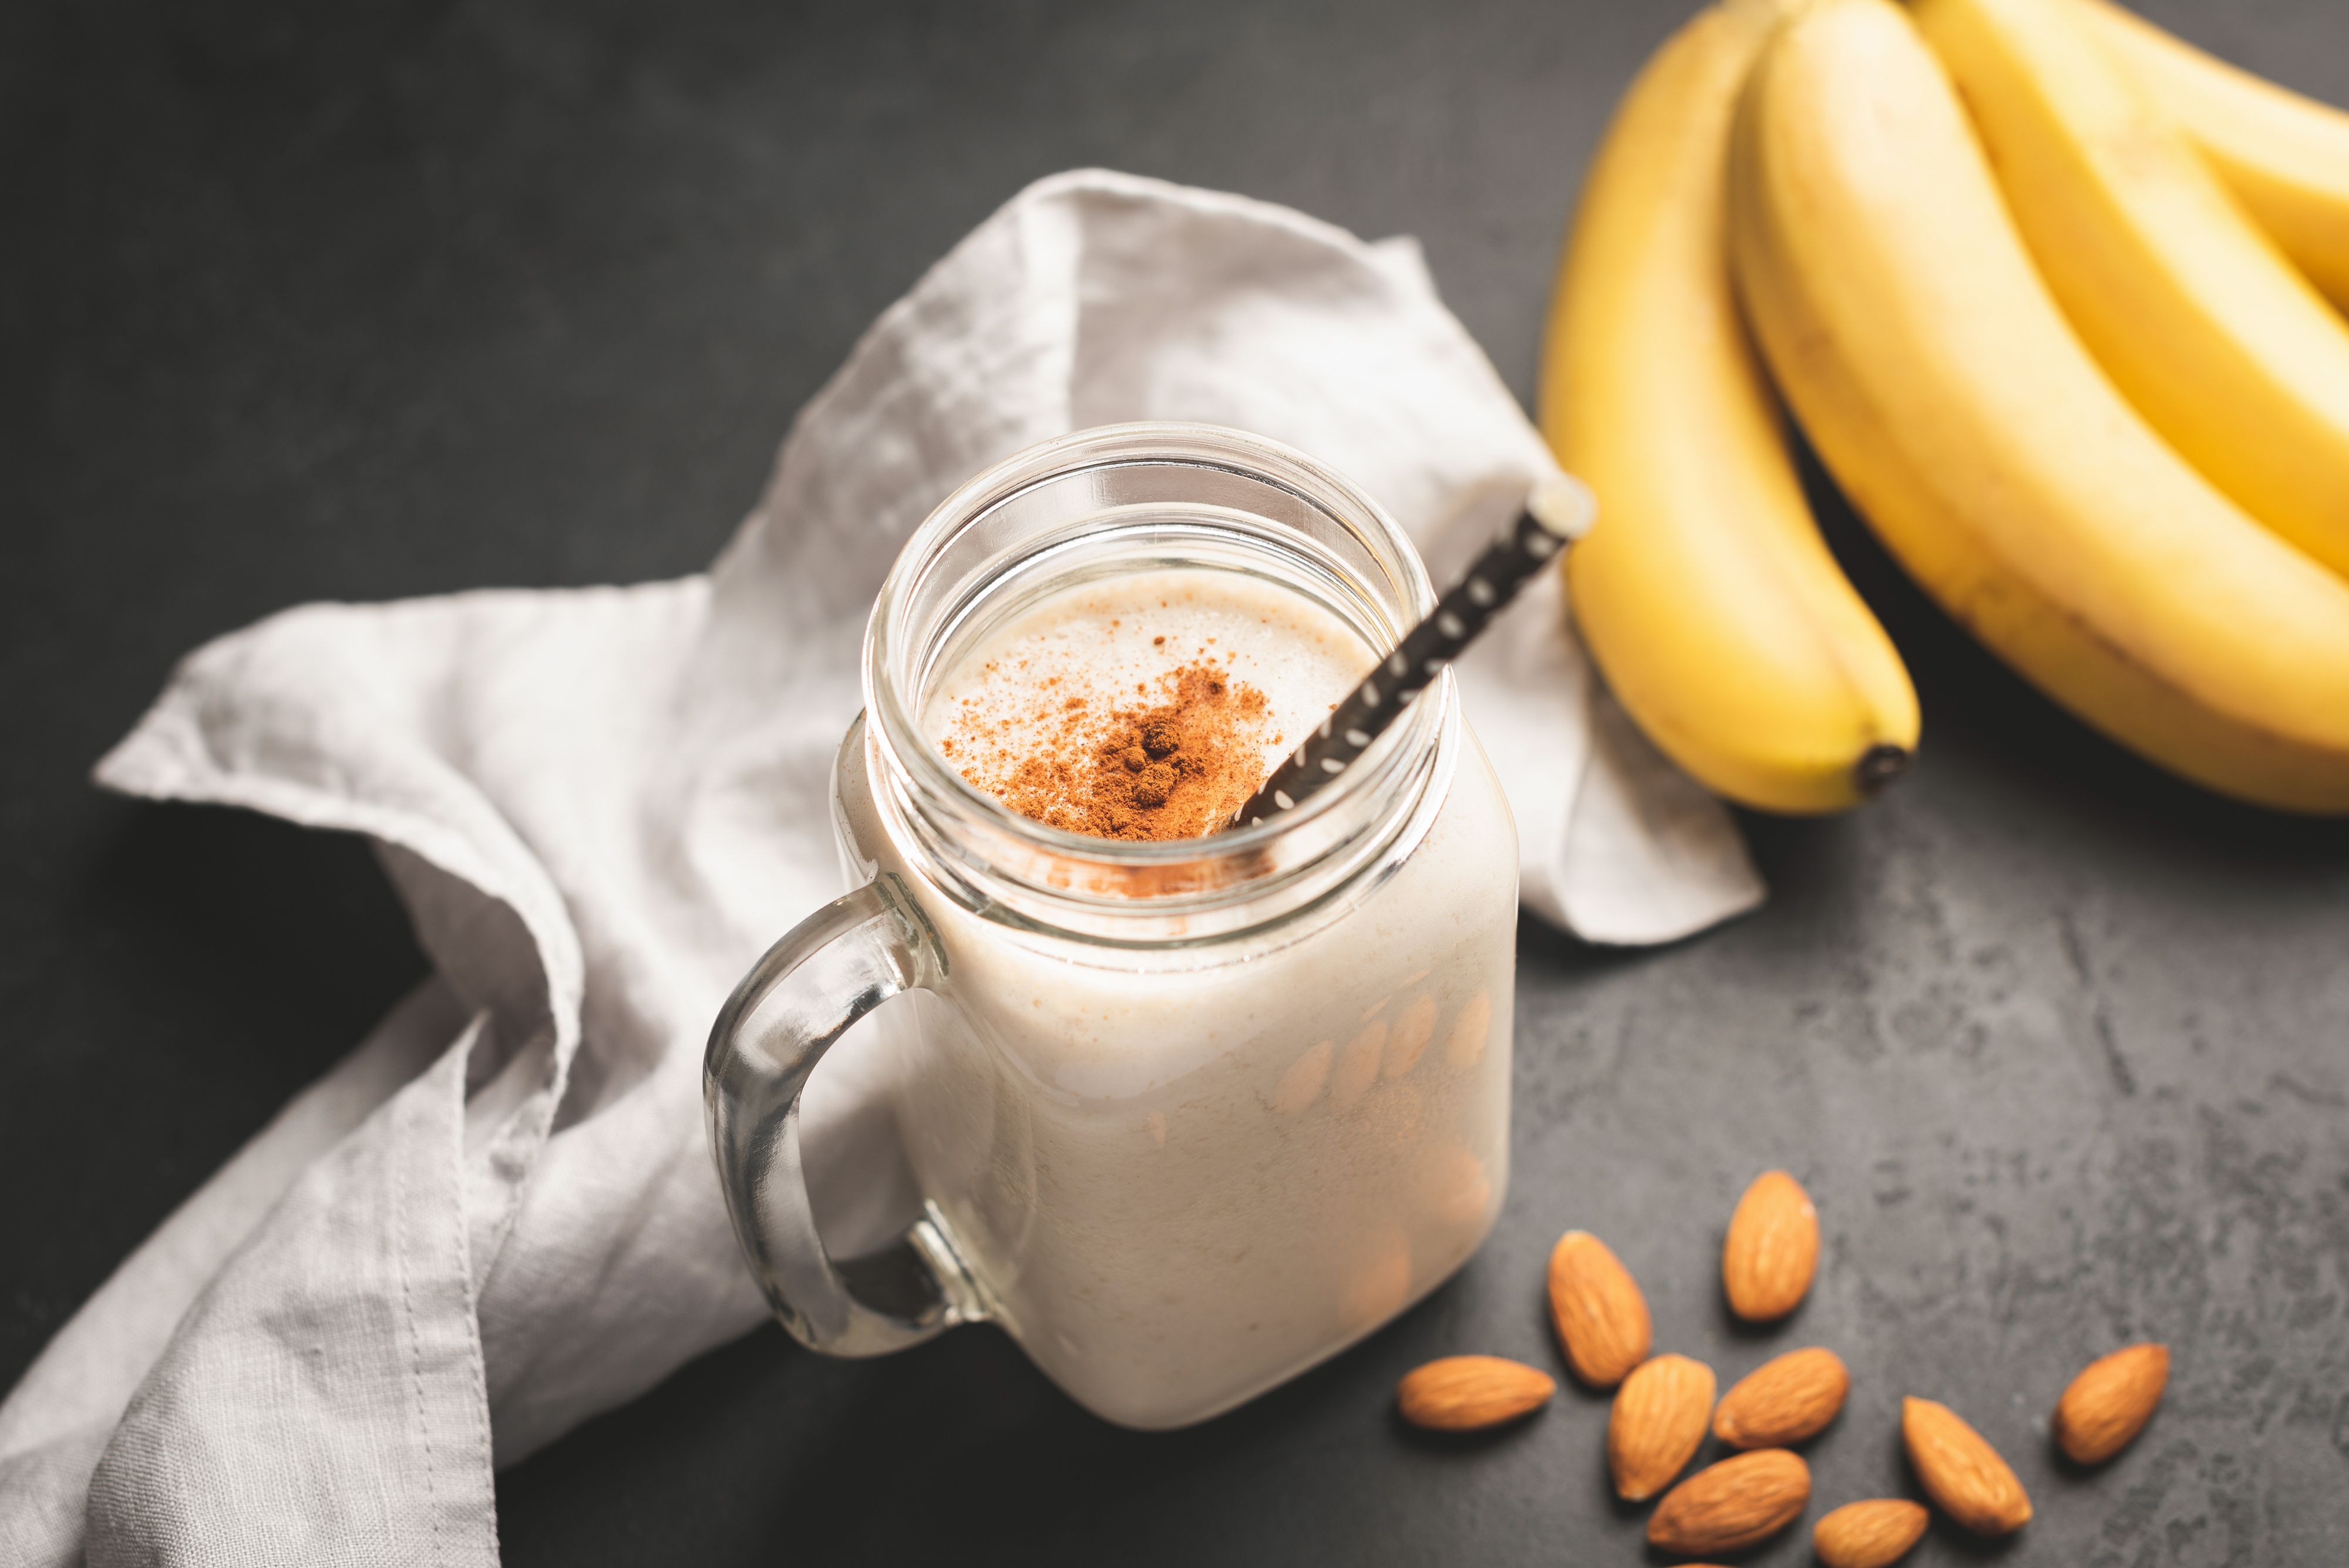 banana-smoothie-or-protein-shake-in-drinking-jar-royalty-free-image-1578668254.jpg (4000×2670)